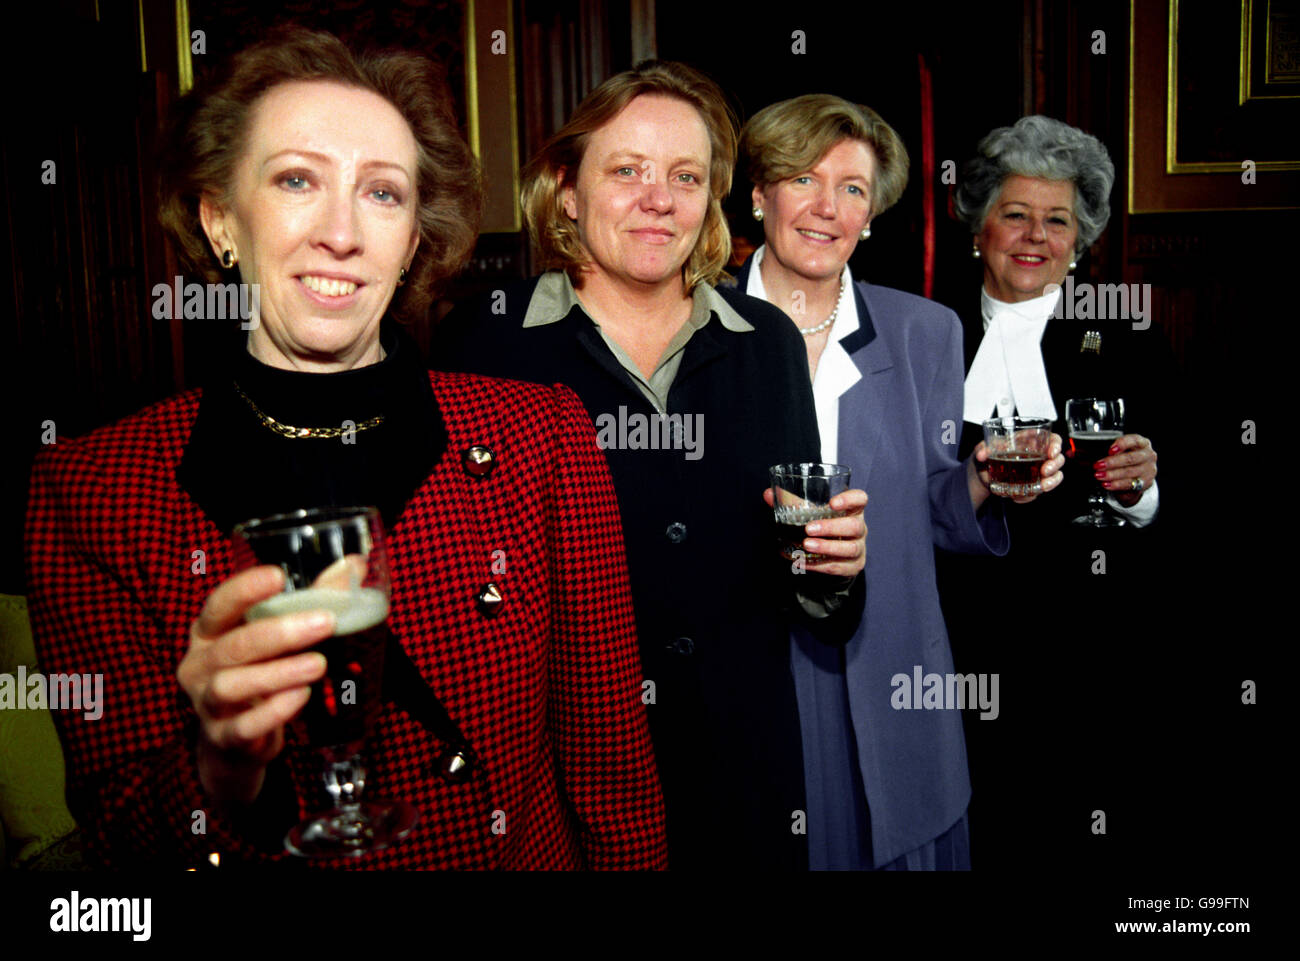 Labour-Abgeordnete (L-R): Margaret Beckett, Mo Mowlam und Ann Taylor probieren das neue Bier mit House of Commons-Sprecherin Betty Boothroyd (rechts). Stockfoto